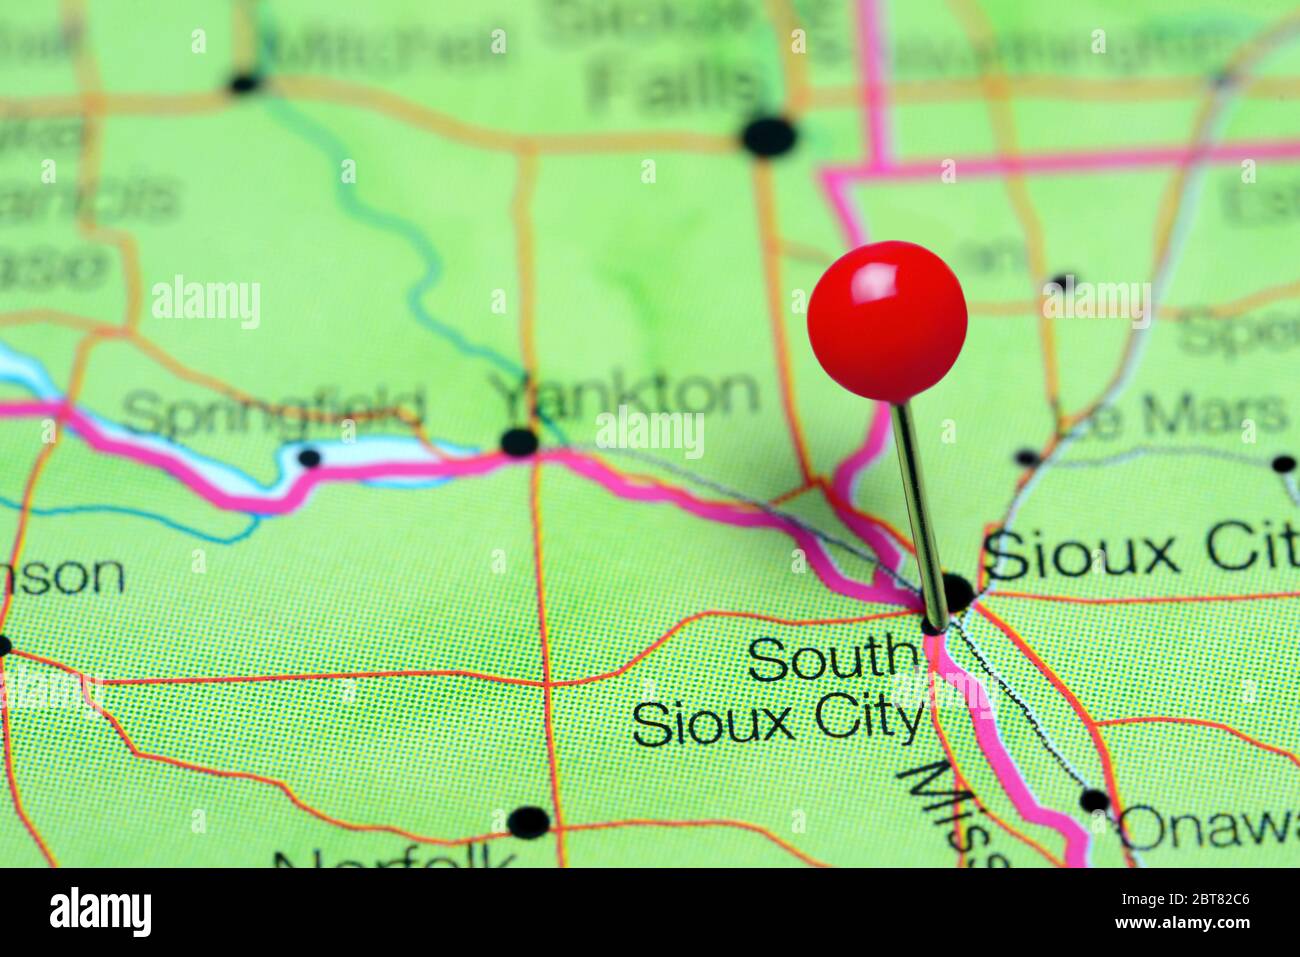 South Sioux City è stato inserito su una mappa del Nebraska, Stati Uniti Foto Stock